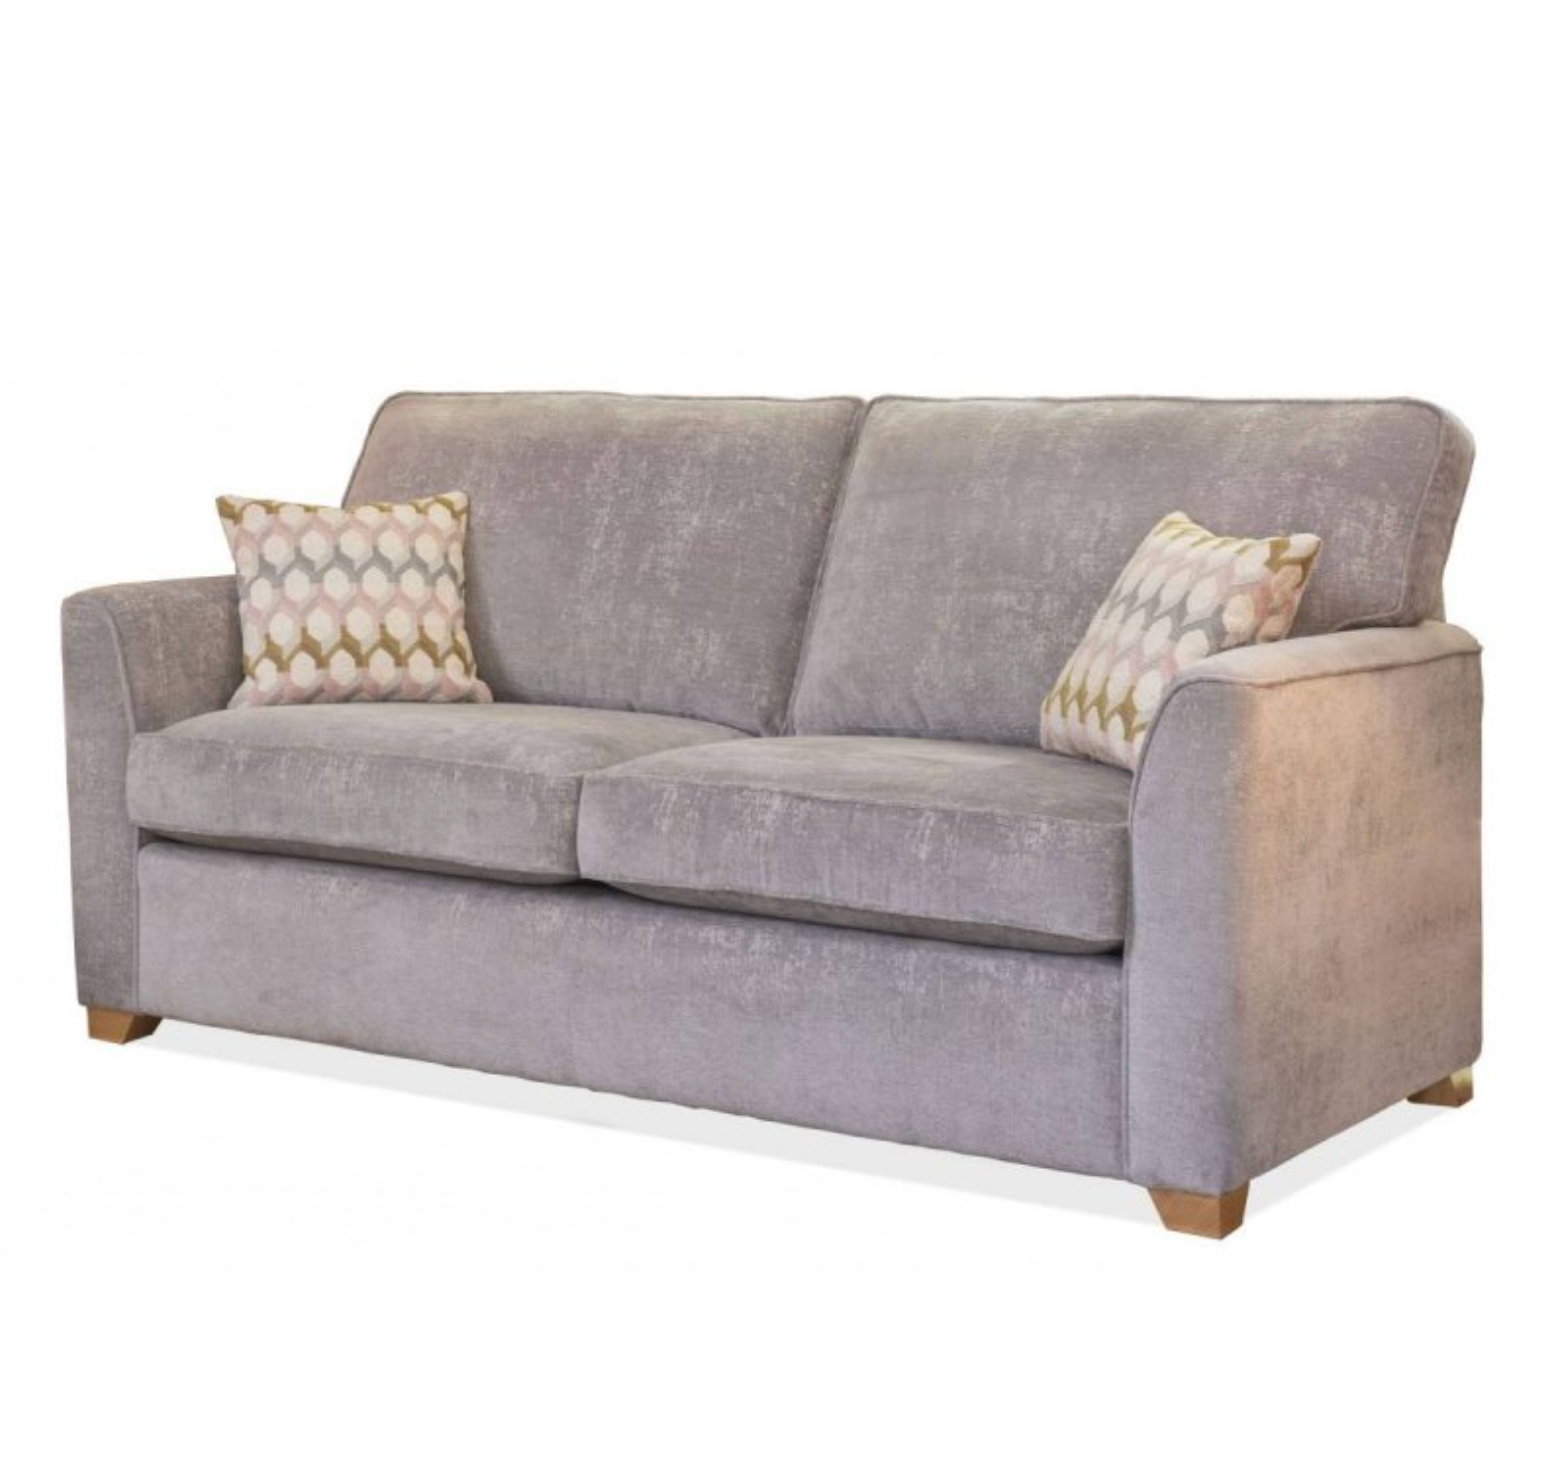 Alstons Reuben 3 Seater Sofa Bed Grey Fabric 10 Year guarantee